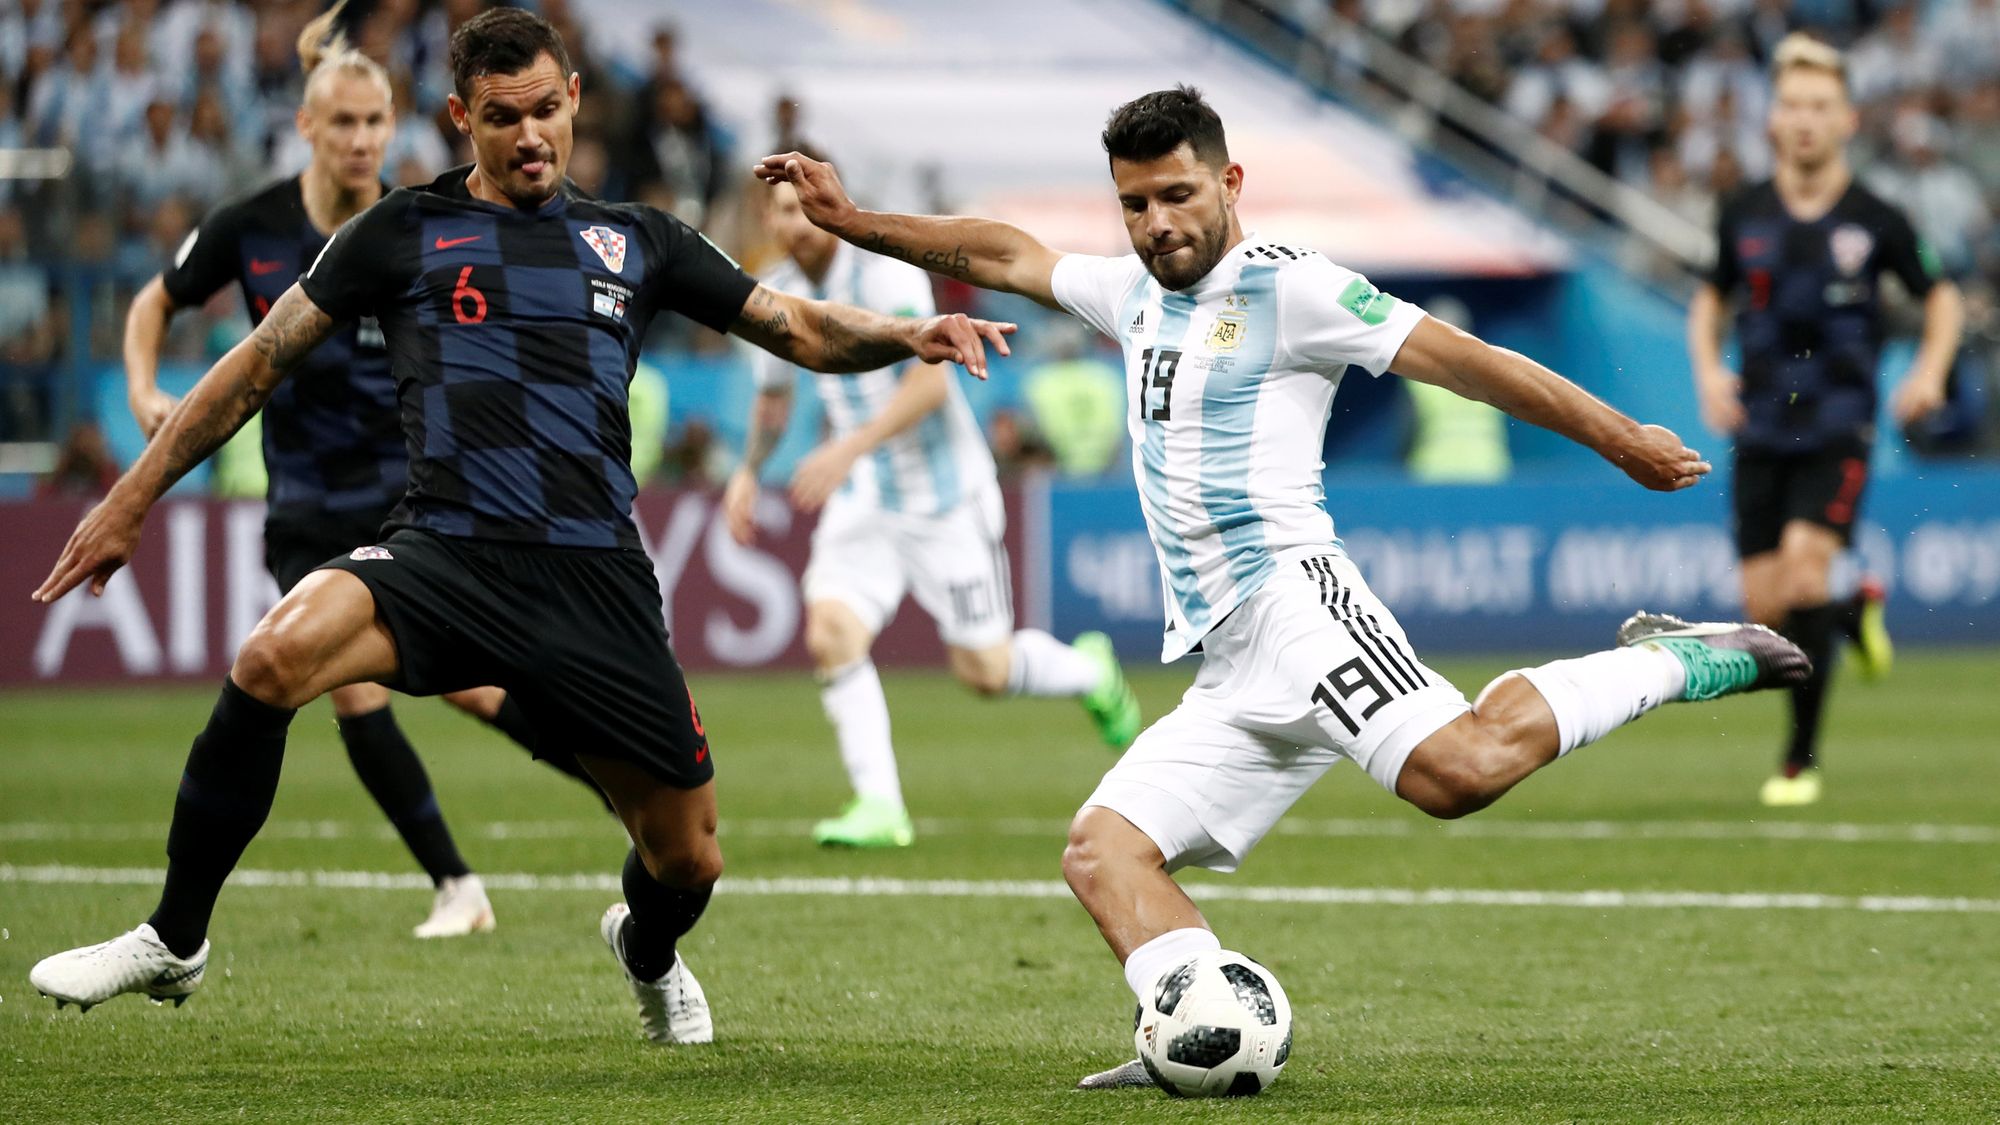 Mundiales con la Selección Argentina: 3 (Sudáfrica 2010, Brasil 2014 y Rusia 2018)